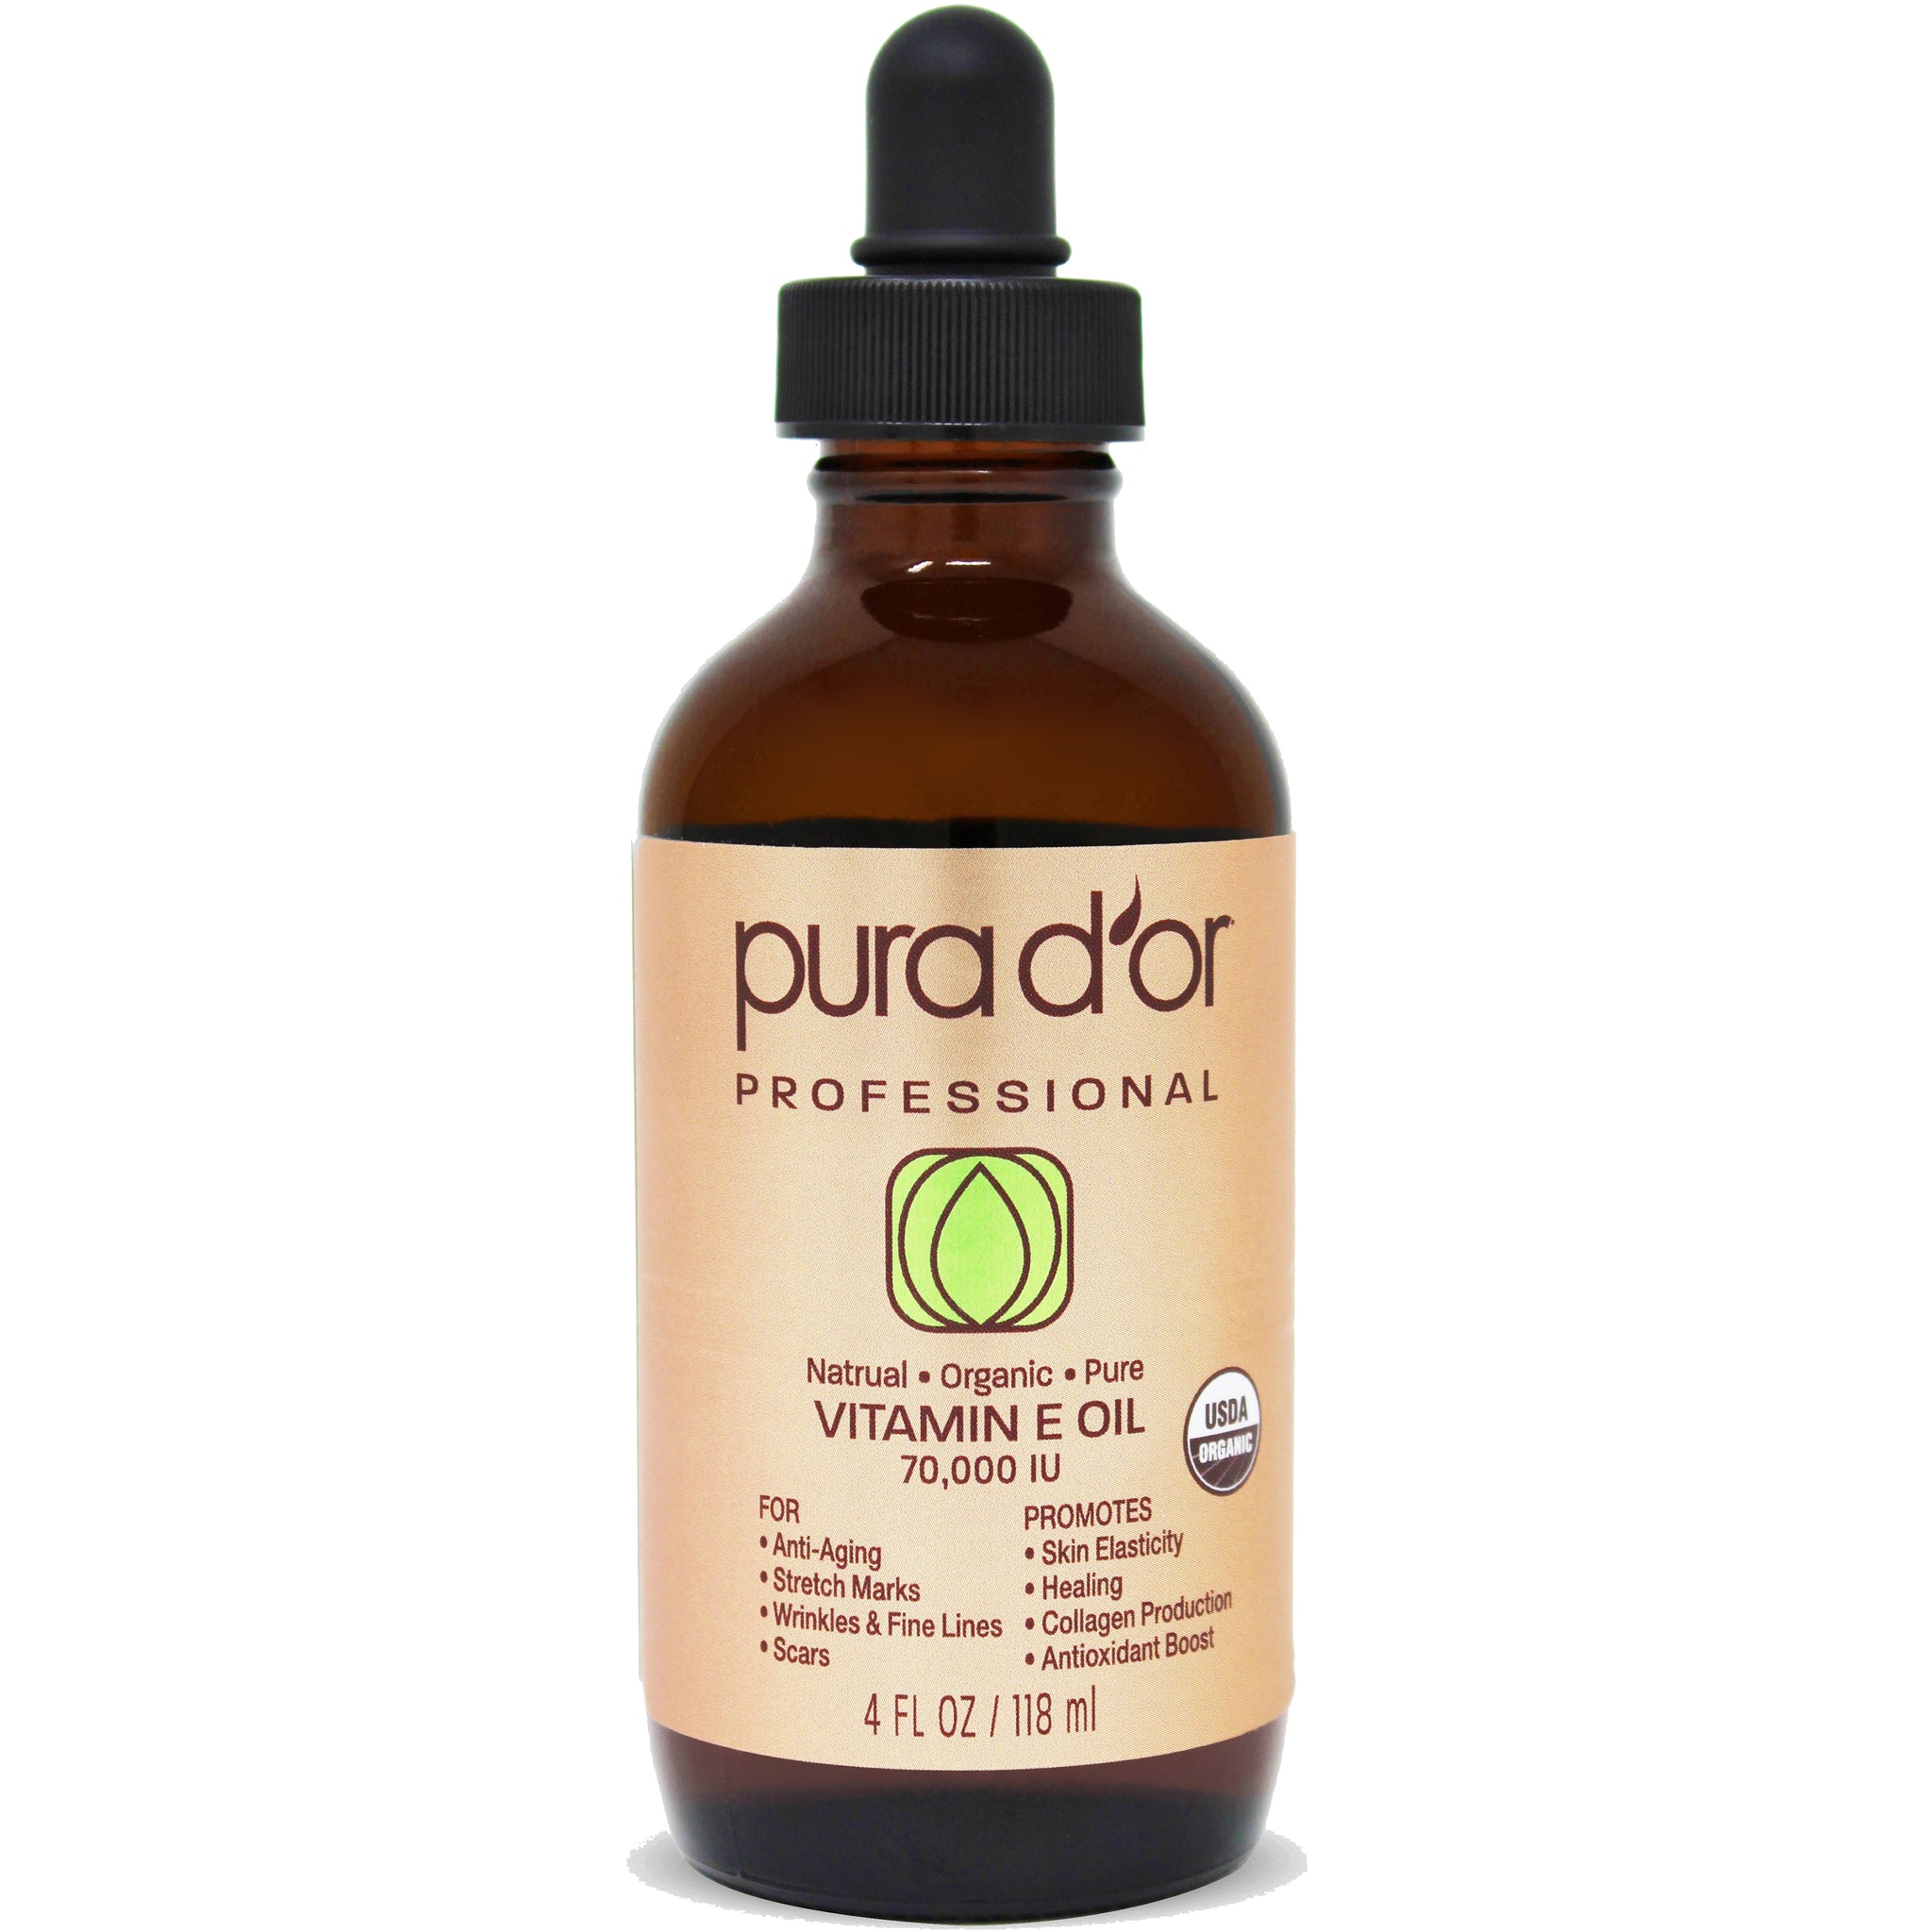 PURA D’OR Professional Vitamin E Oil